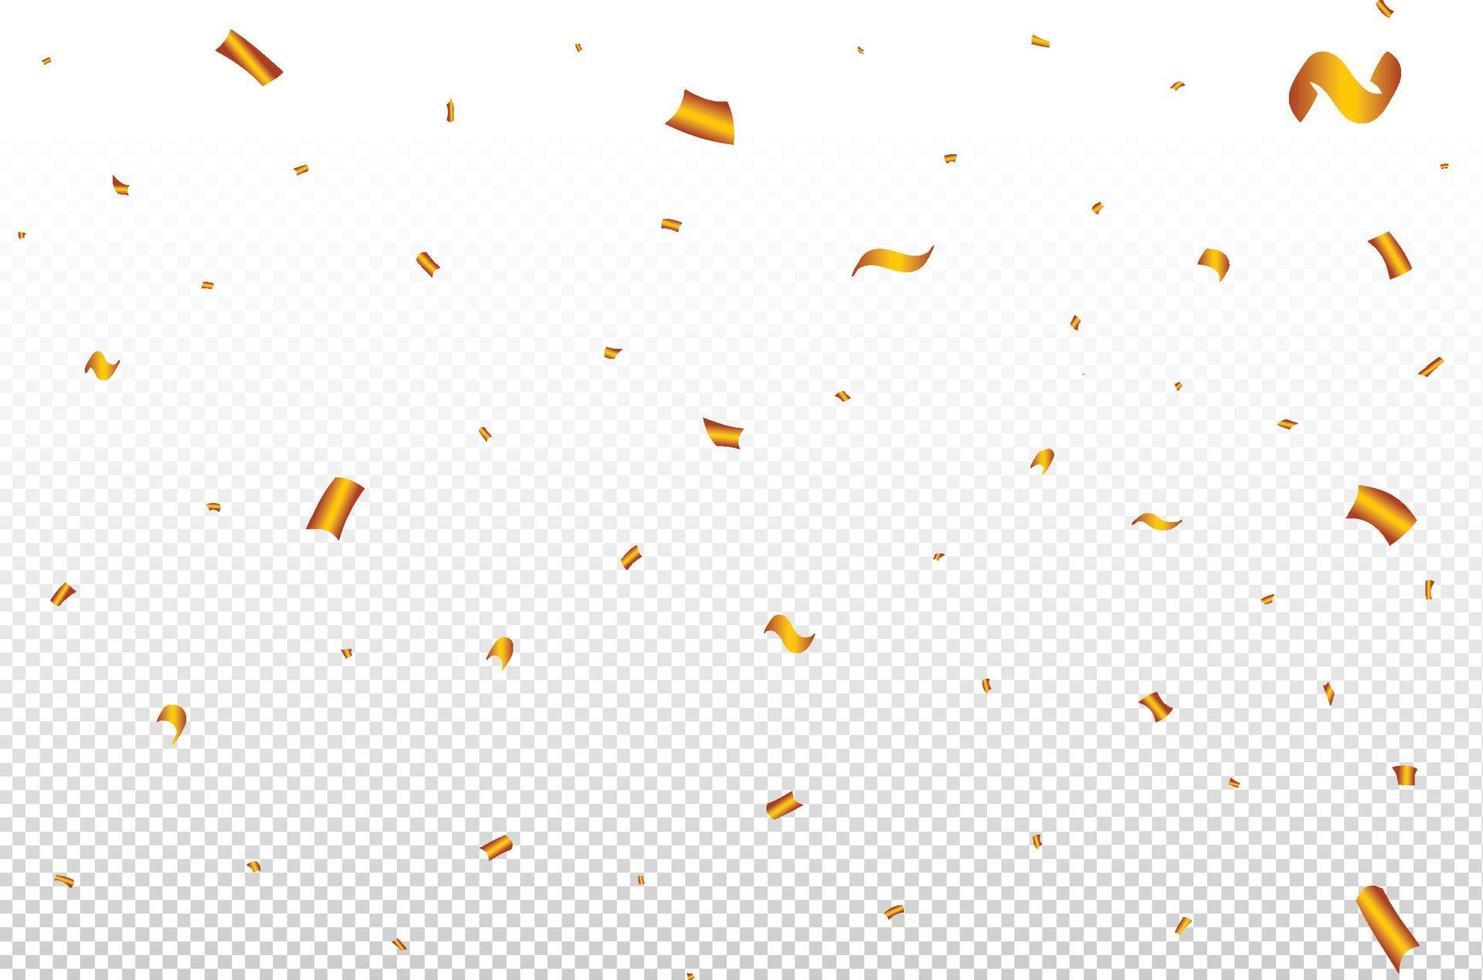 ilustração de queda de confete dourado e fita para aniversário. vetor de elementos de celebração do festival. explosão de confete dourado e enfeites em um fundo transparente. elementos de carnaval.